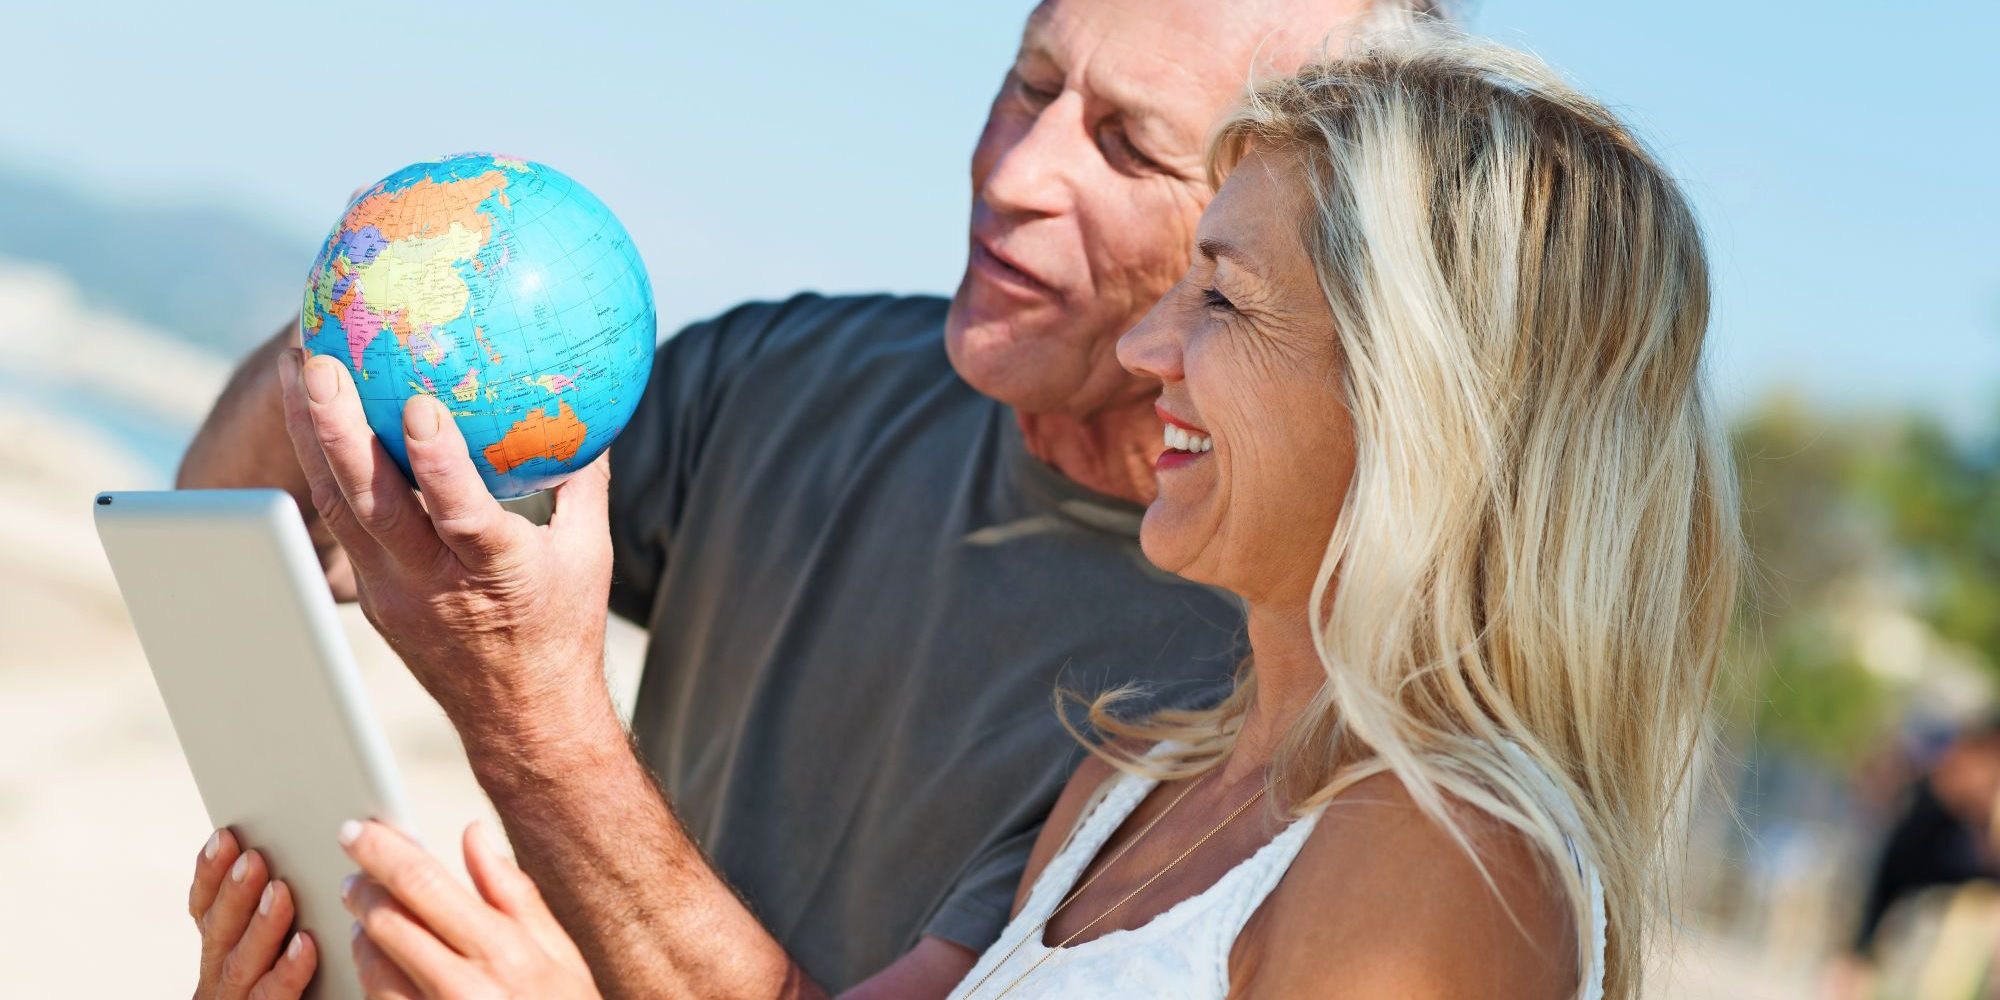 Mann hält eine kleine Weltkugel und Frau hält ein Tablet beide stehen am Strand und schauen auf die Weltkugel